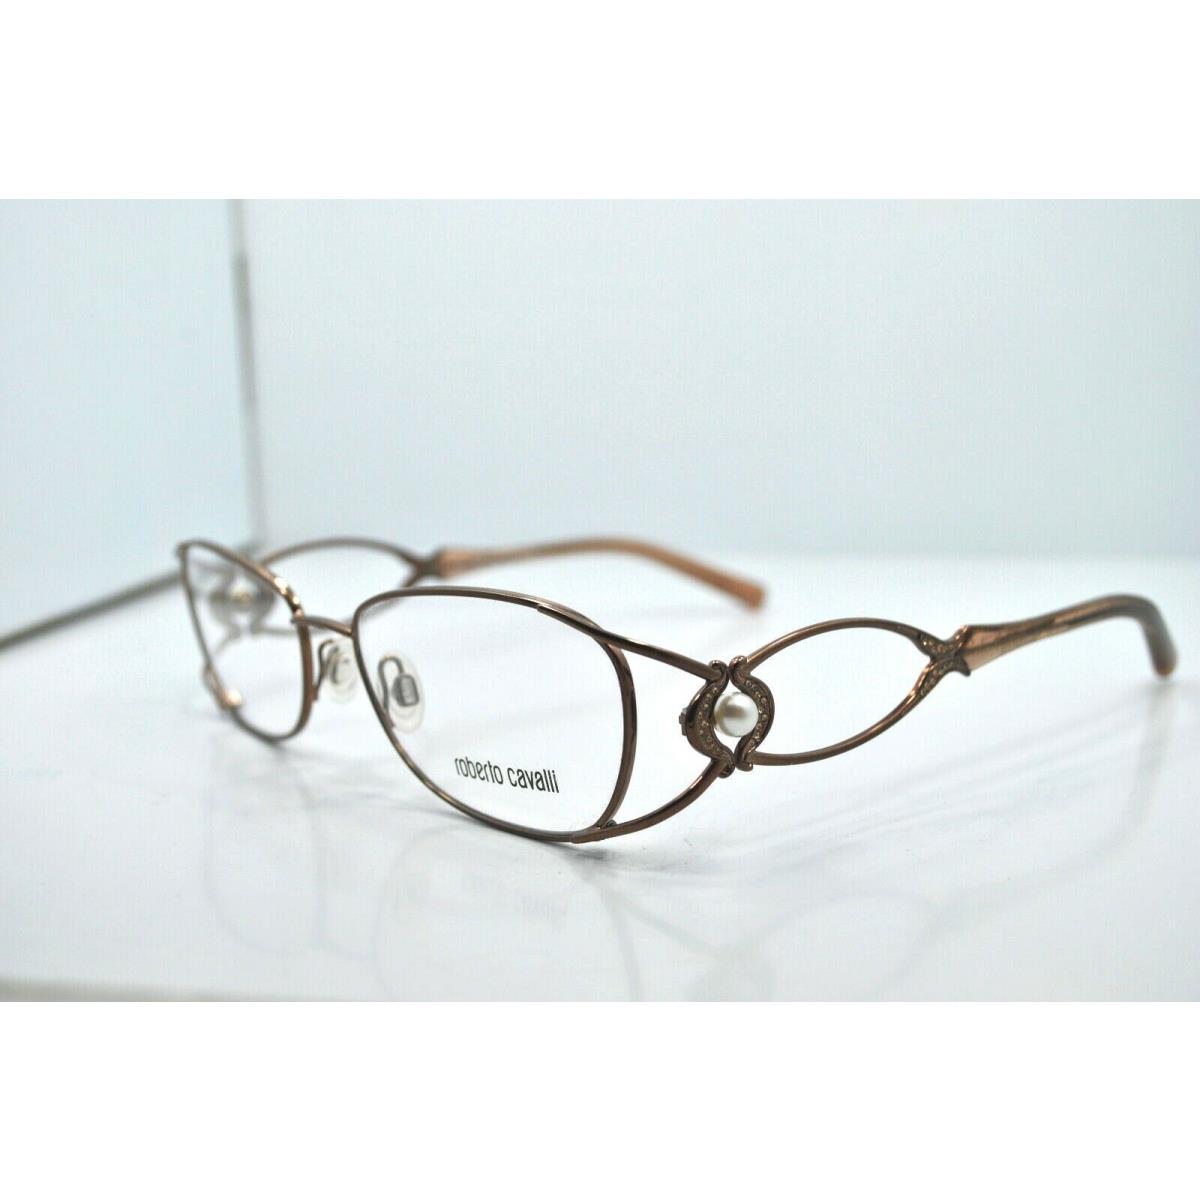 Roberto Cavalli Tiglio 631 48A Eyeglasses Frame